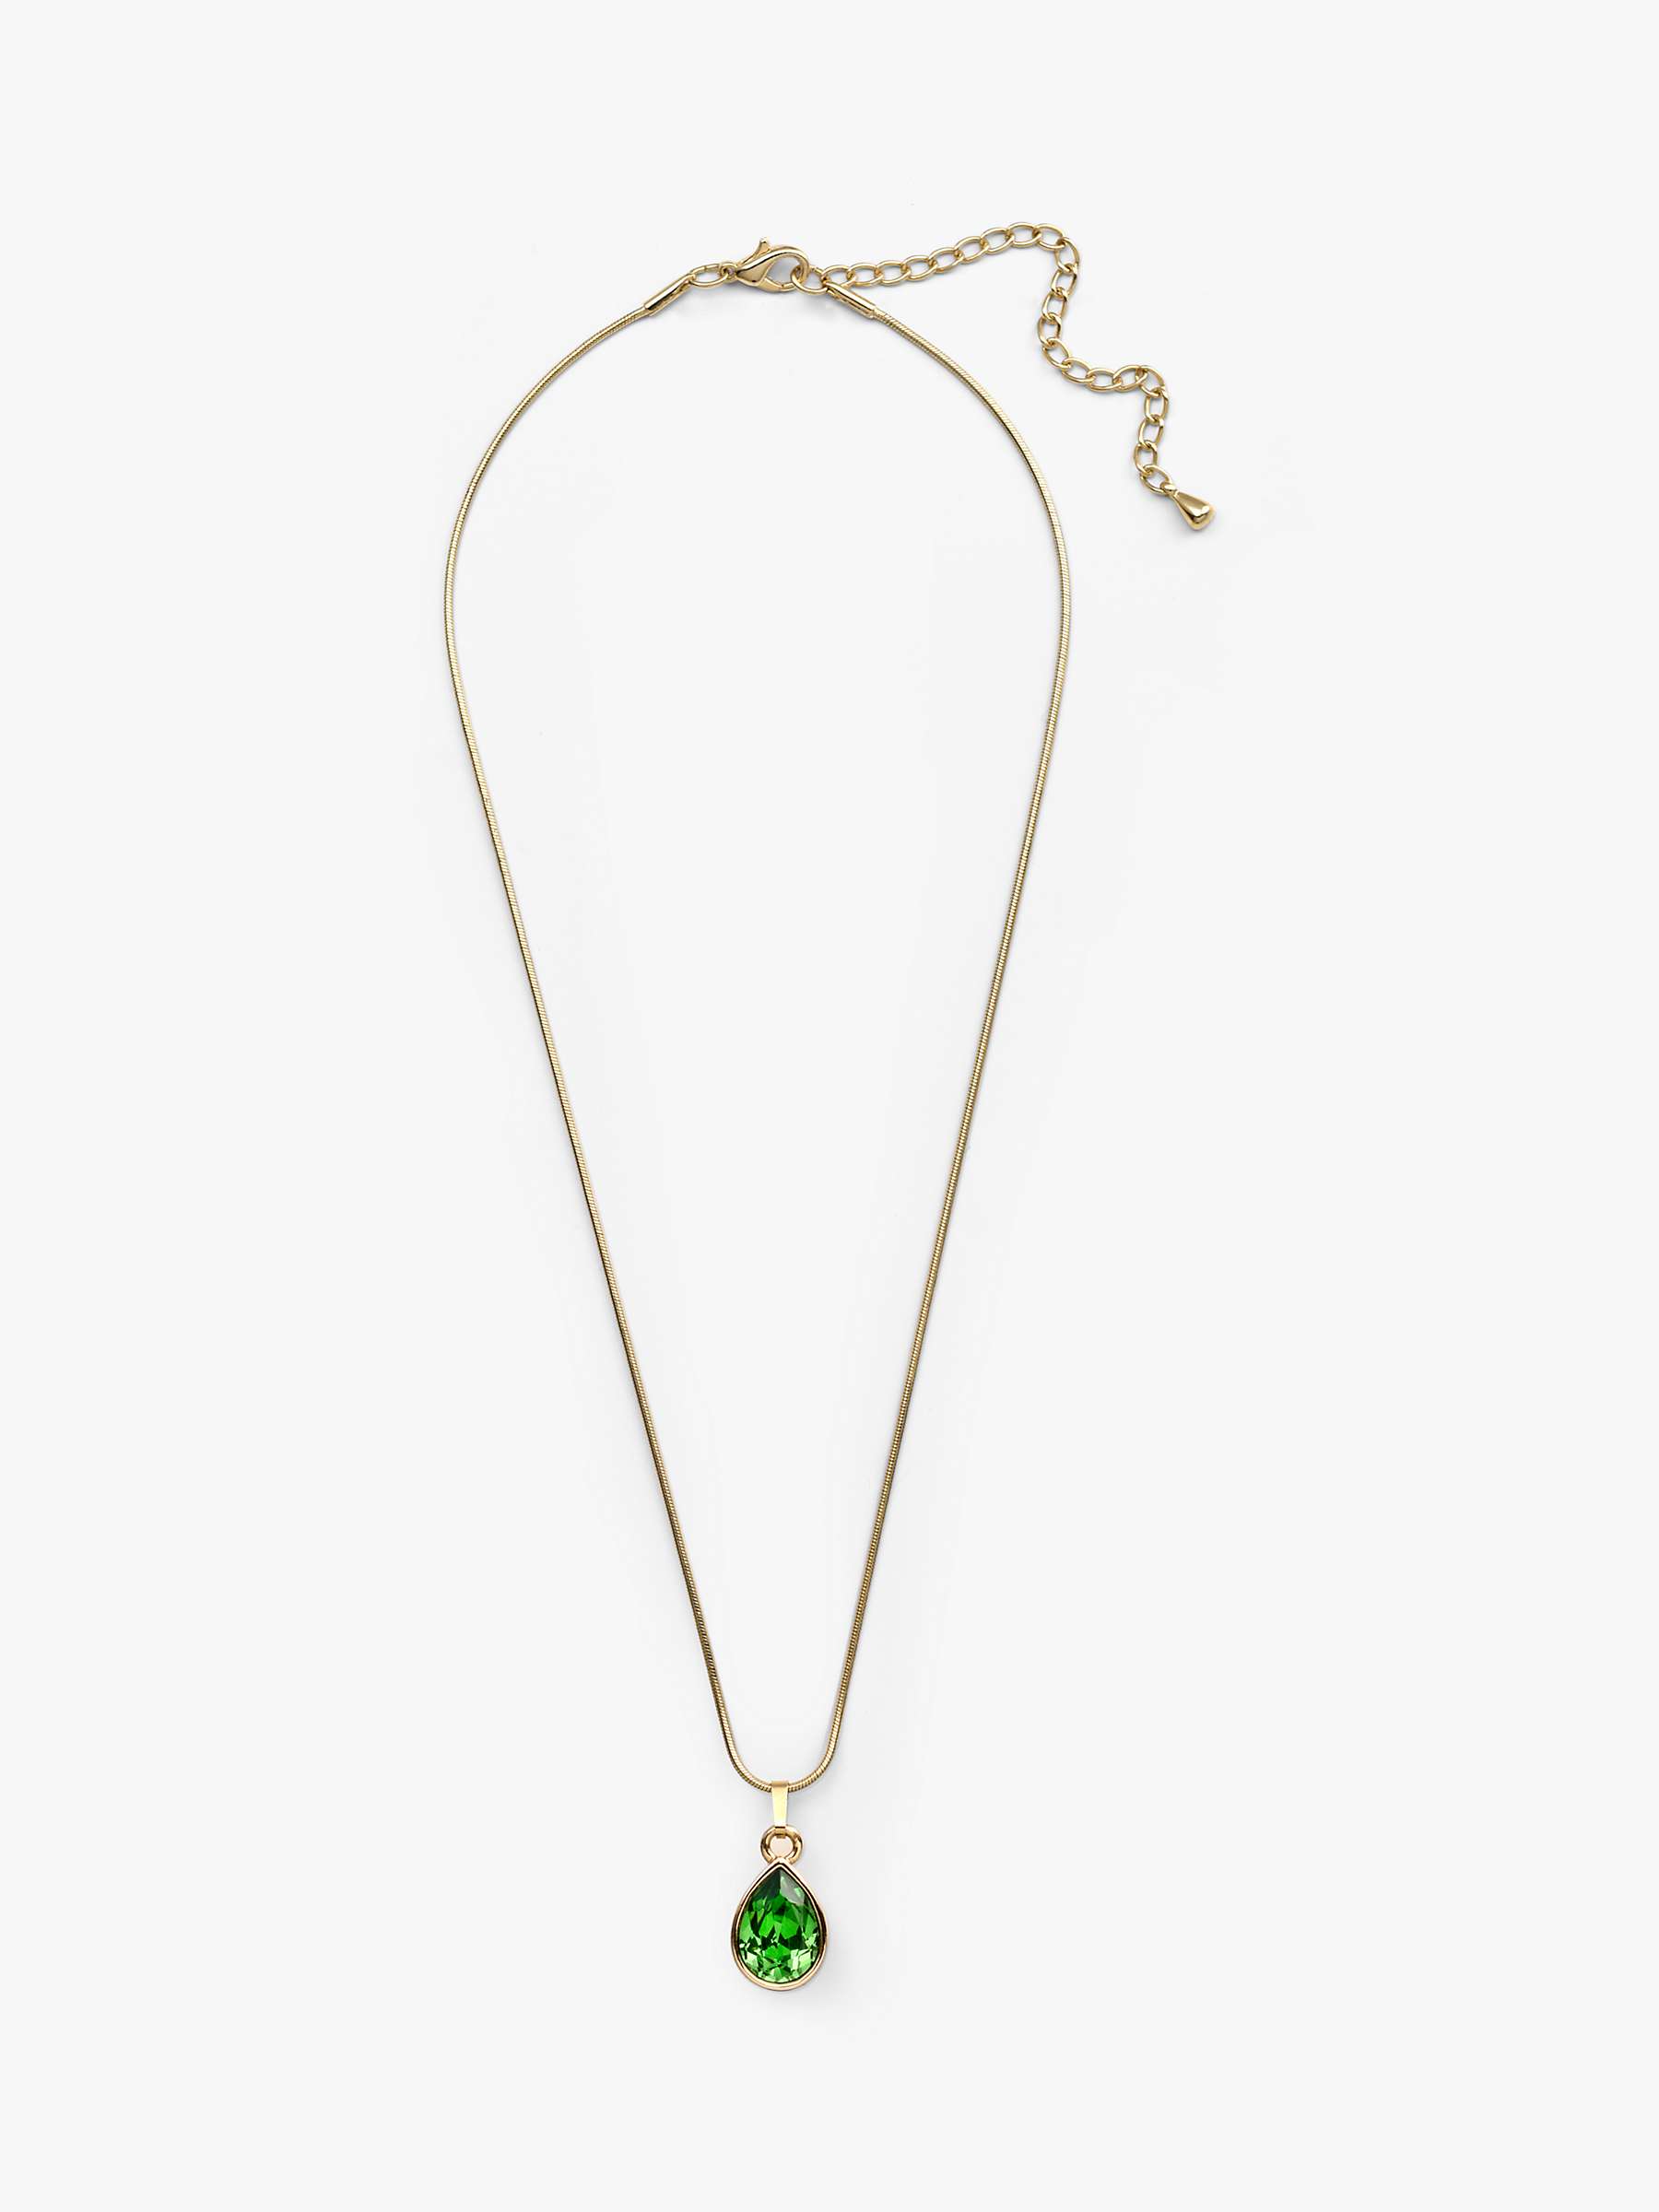 Buy Eclectica Vintage Swarovski Crystal Teardrop Pendant Necklace, Gold/Green Online at johnlewis.com